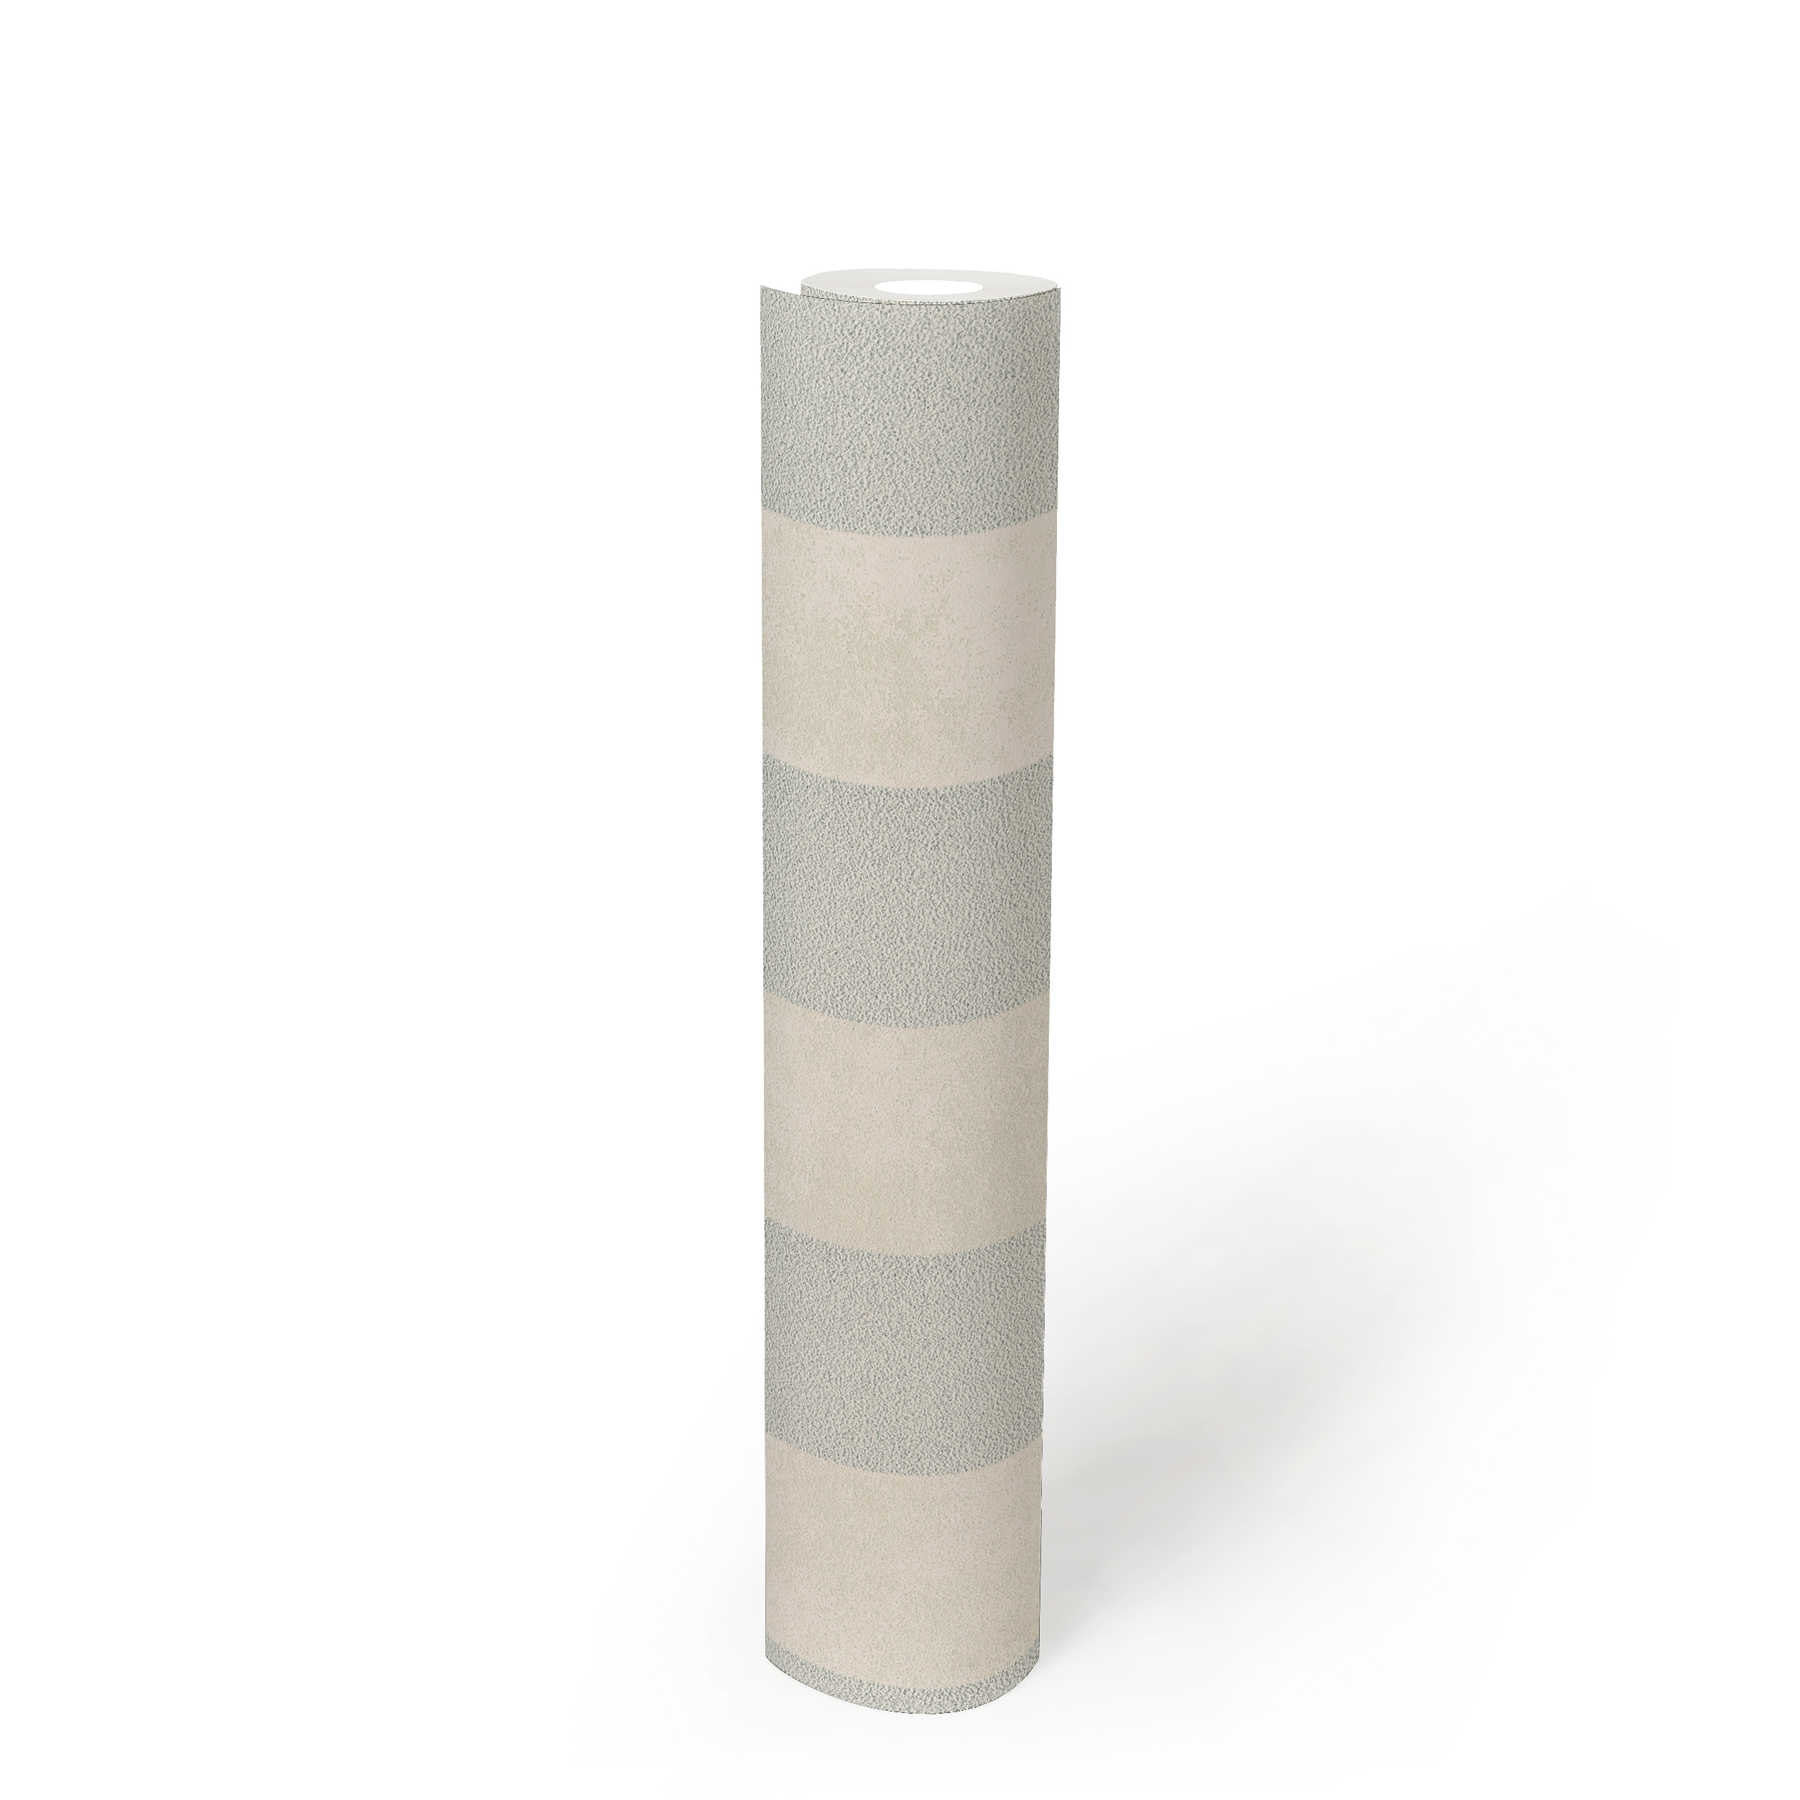             Blokstreepbehang met kleur en structuurpatroon - zilver, grijs, wit
        